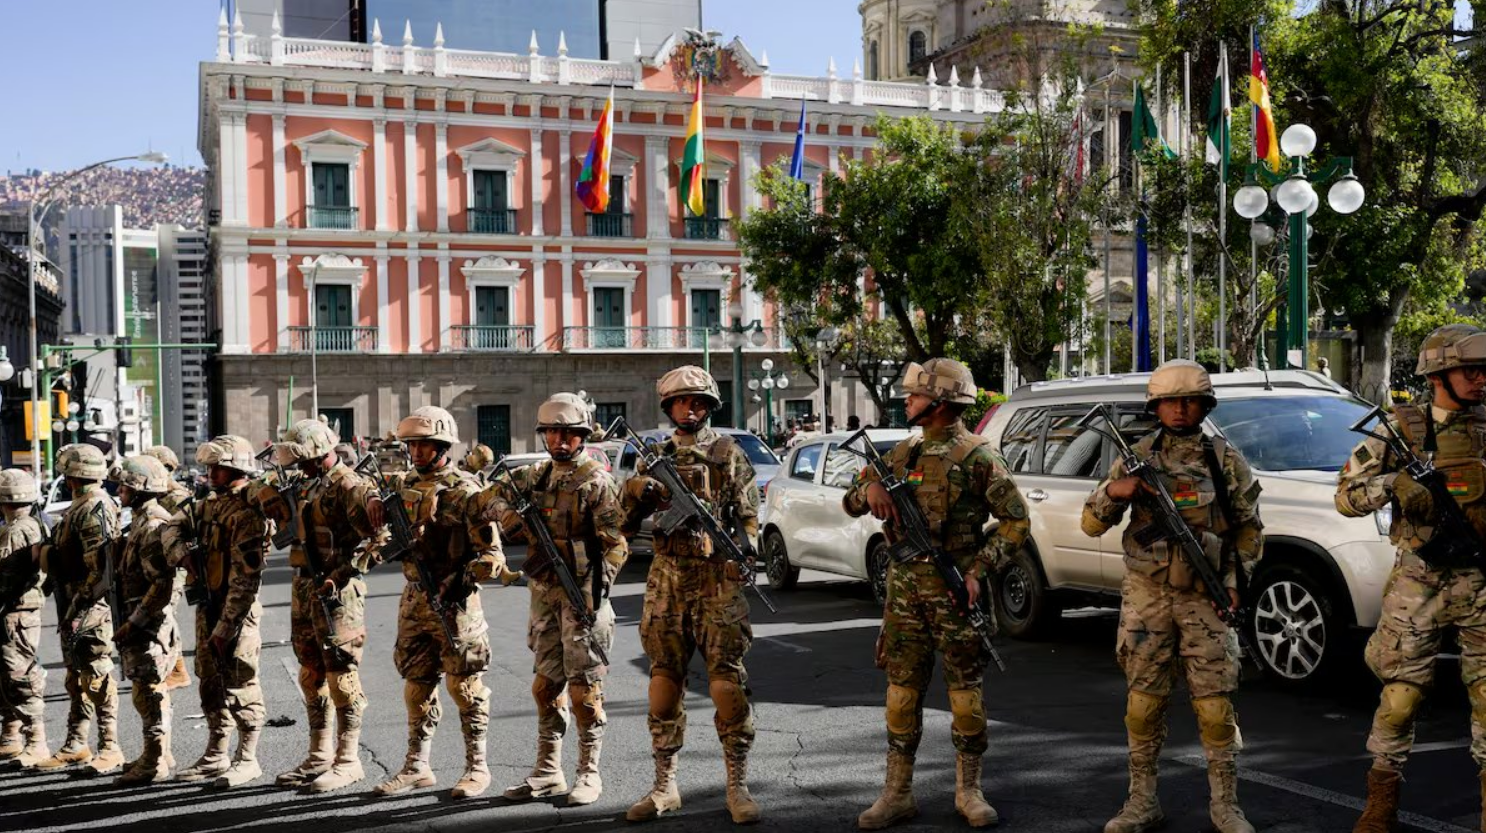 Tropas de asalto bolivianas tomaron predios del palacio de gobierno en La Paz